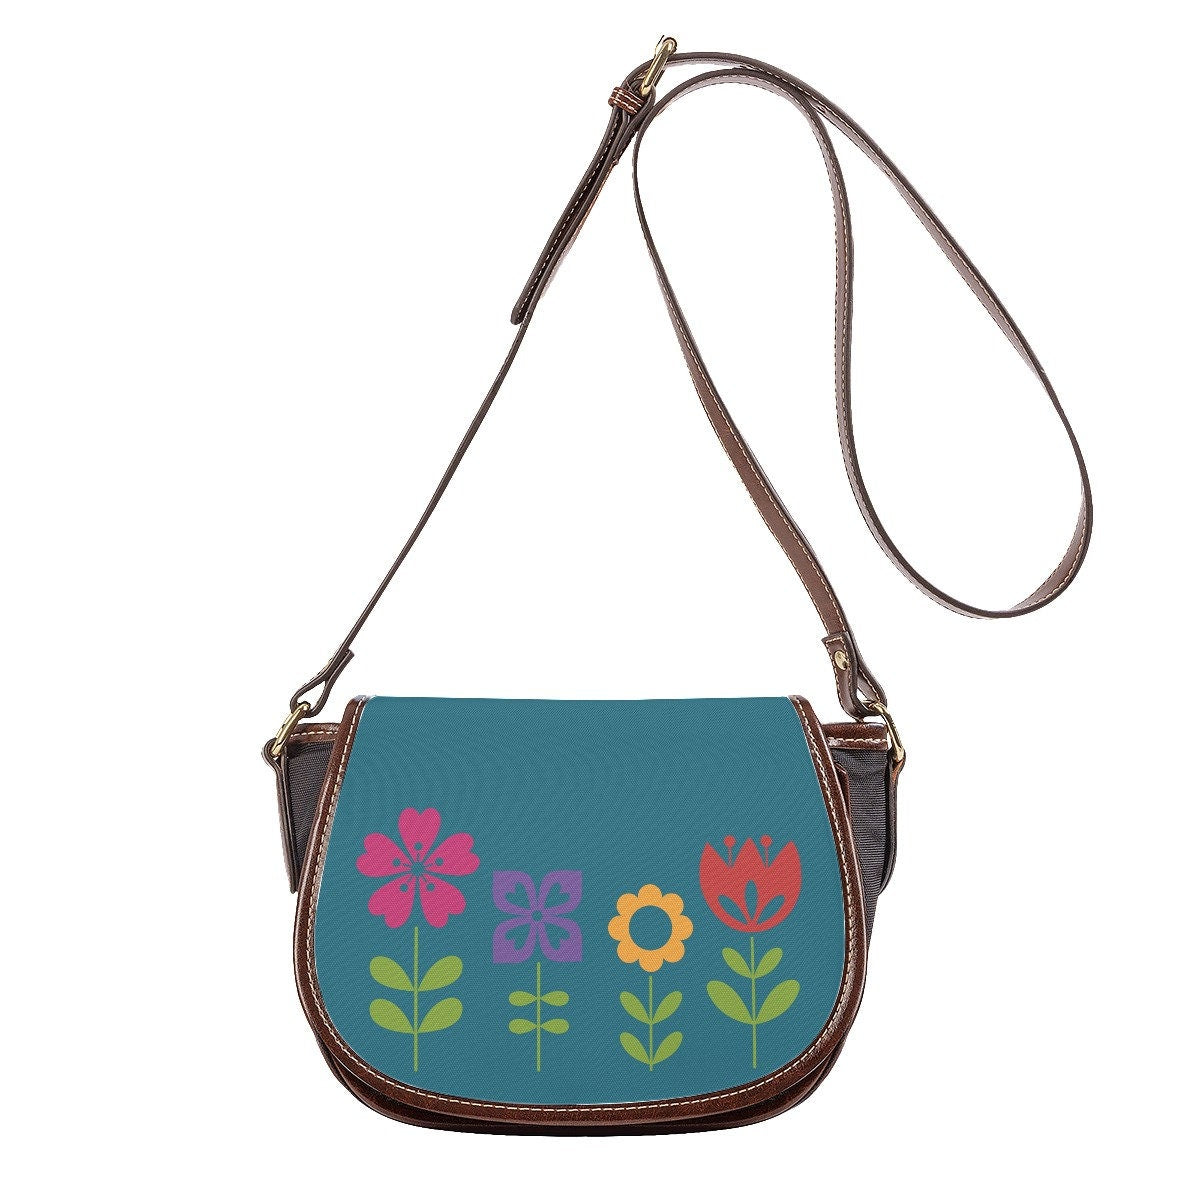 Saddle Bag, Teal Handbag, Handmade bag, Womens Bag, Womens Purse, Teal Bag, Floral Handbag, Floral Print Handbag, Small Handbag Women